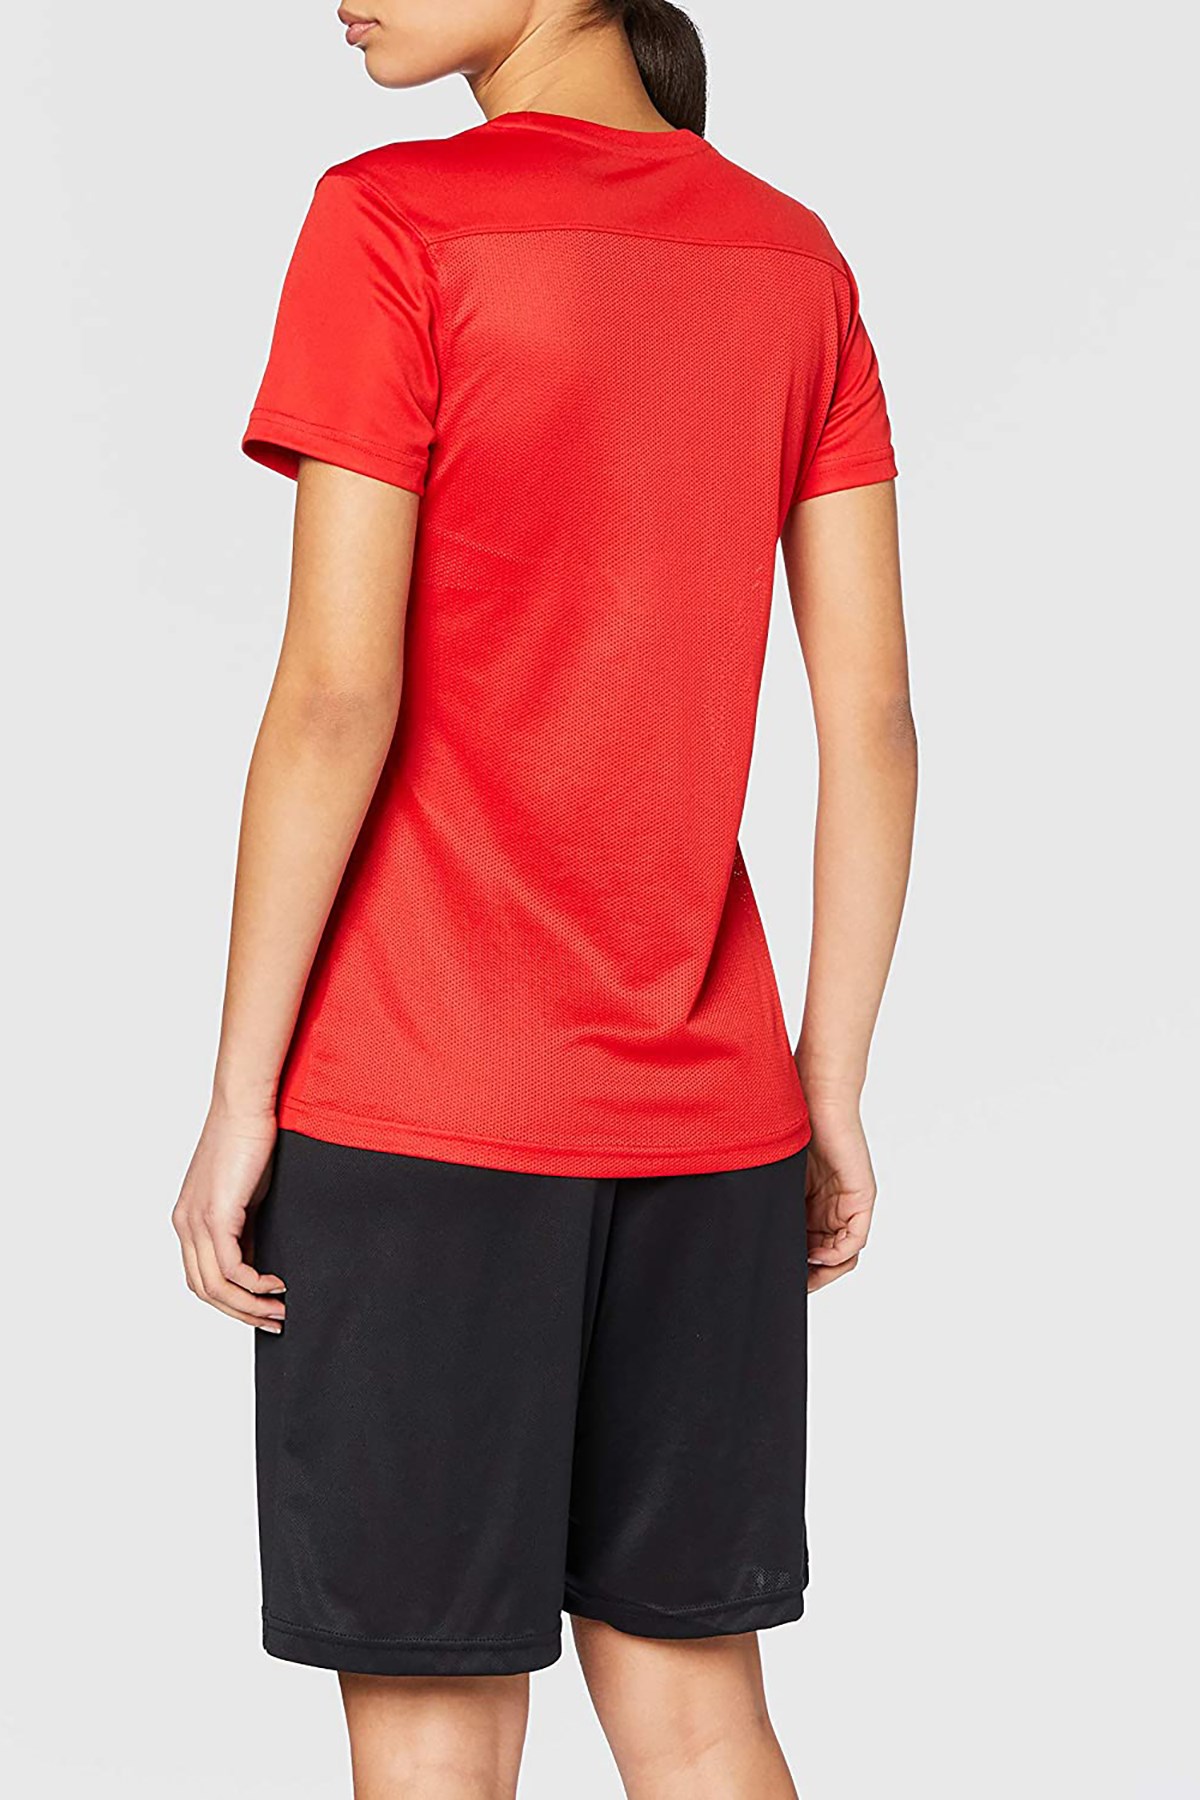 Nike Nike Dry Park VII Kadın Tişörtü BV6728-657